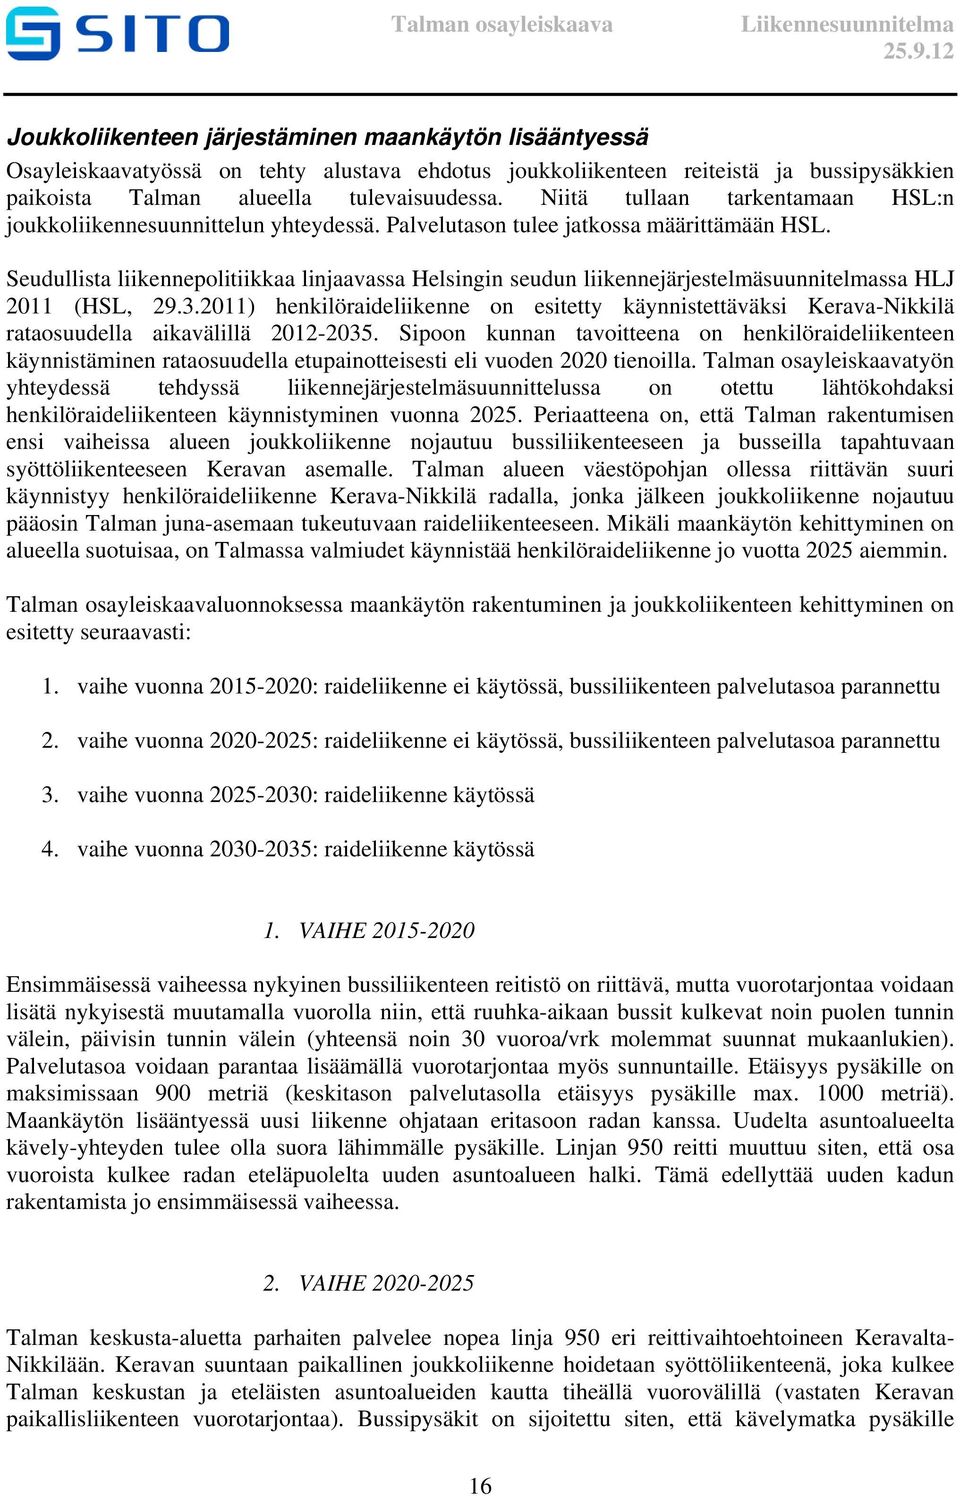 Seudullista liikennepolitiikkaa linjaavassa Helsingin seudun liikennejärjestelmäsuunnitelmassa HLJ 2011 (HSL, 29.3.